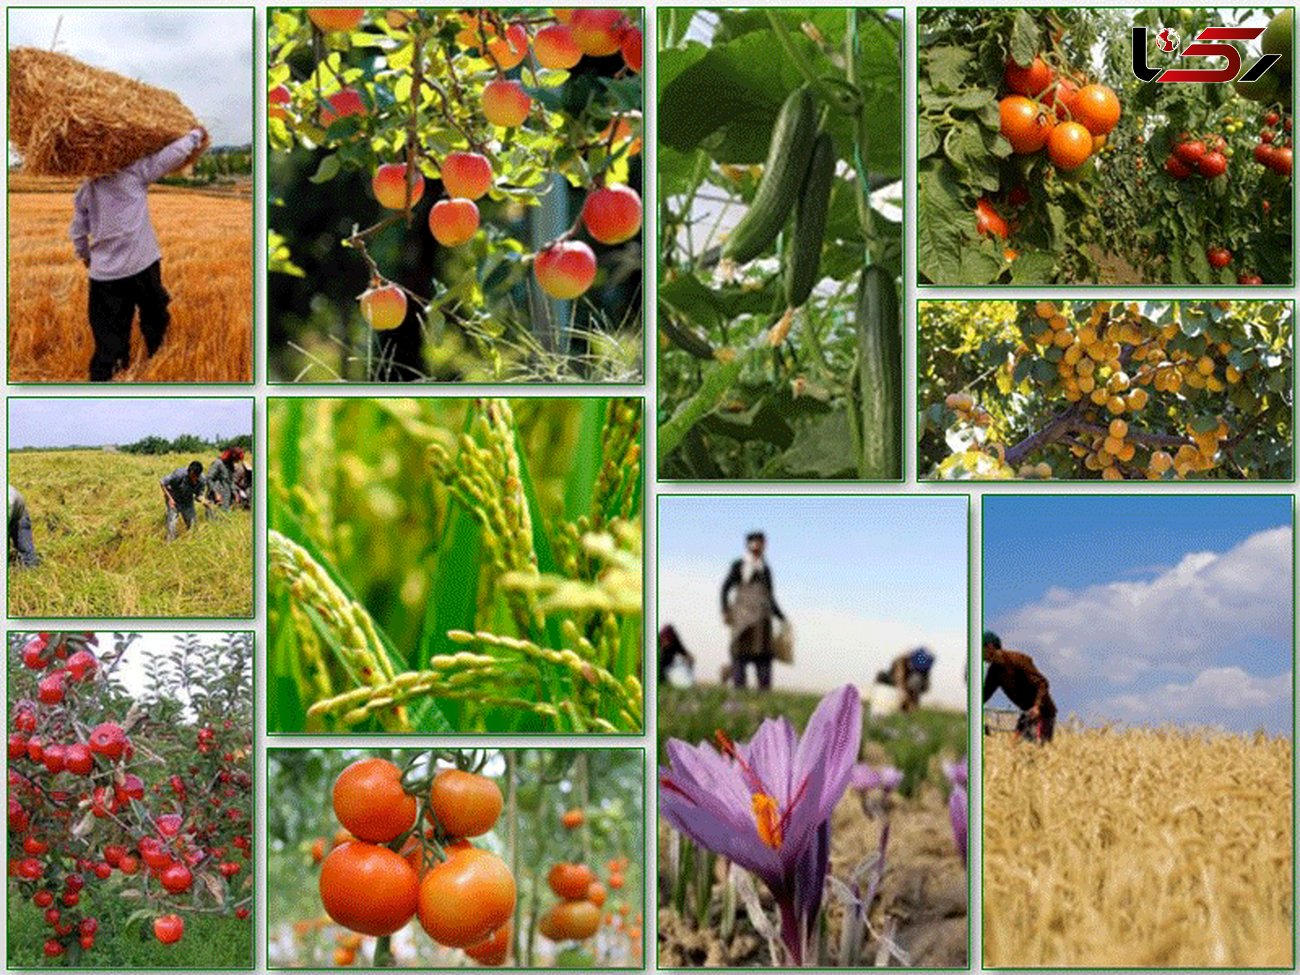 رشد اقتصاد و توسعه اشتغال استان در گرو همراهی و هم افزایی بخش کشاورزی است